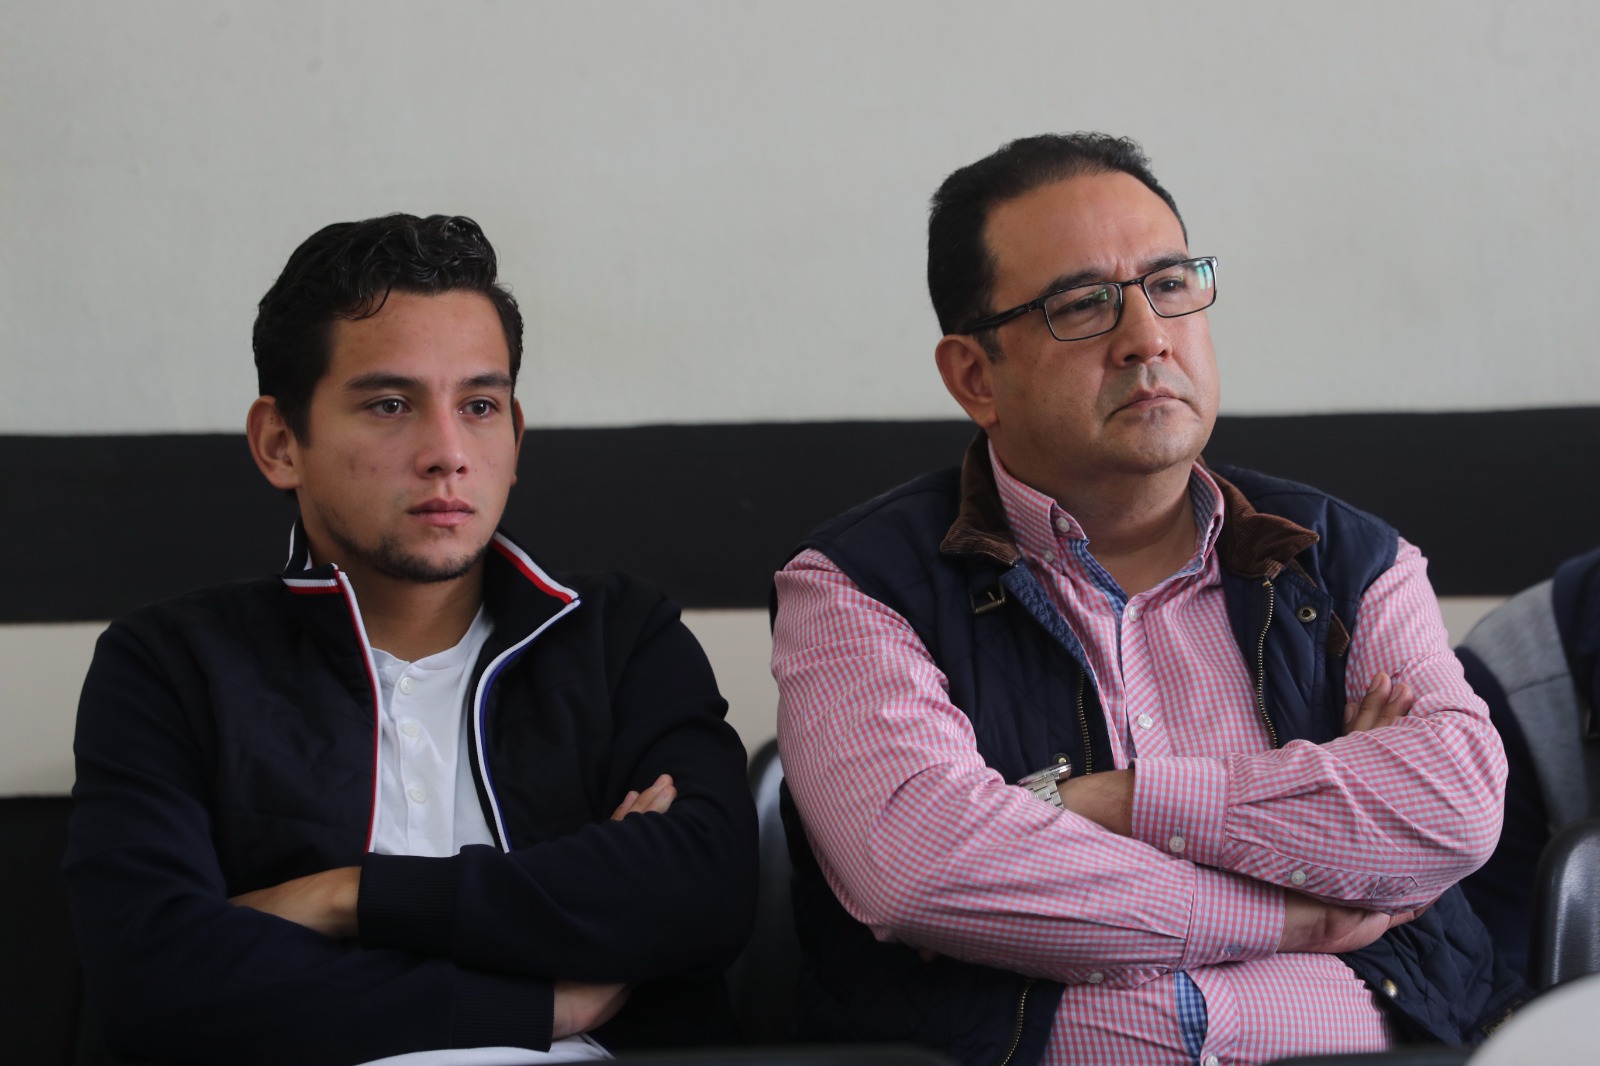 José Manuel Morales y Sammy Morales, familiares del expresidente Jimmy Morales, durante una de las audiencias judicial. (Foto Prensa Libre: Érick Ávila)